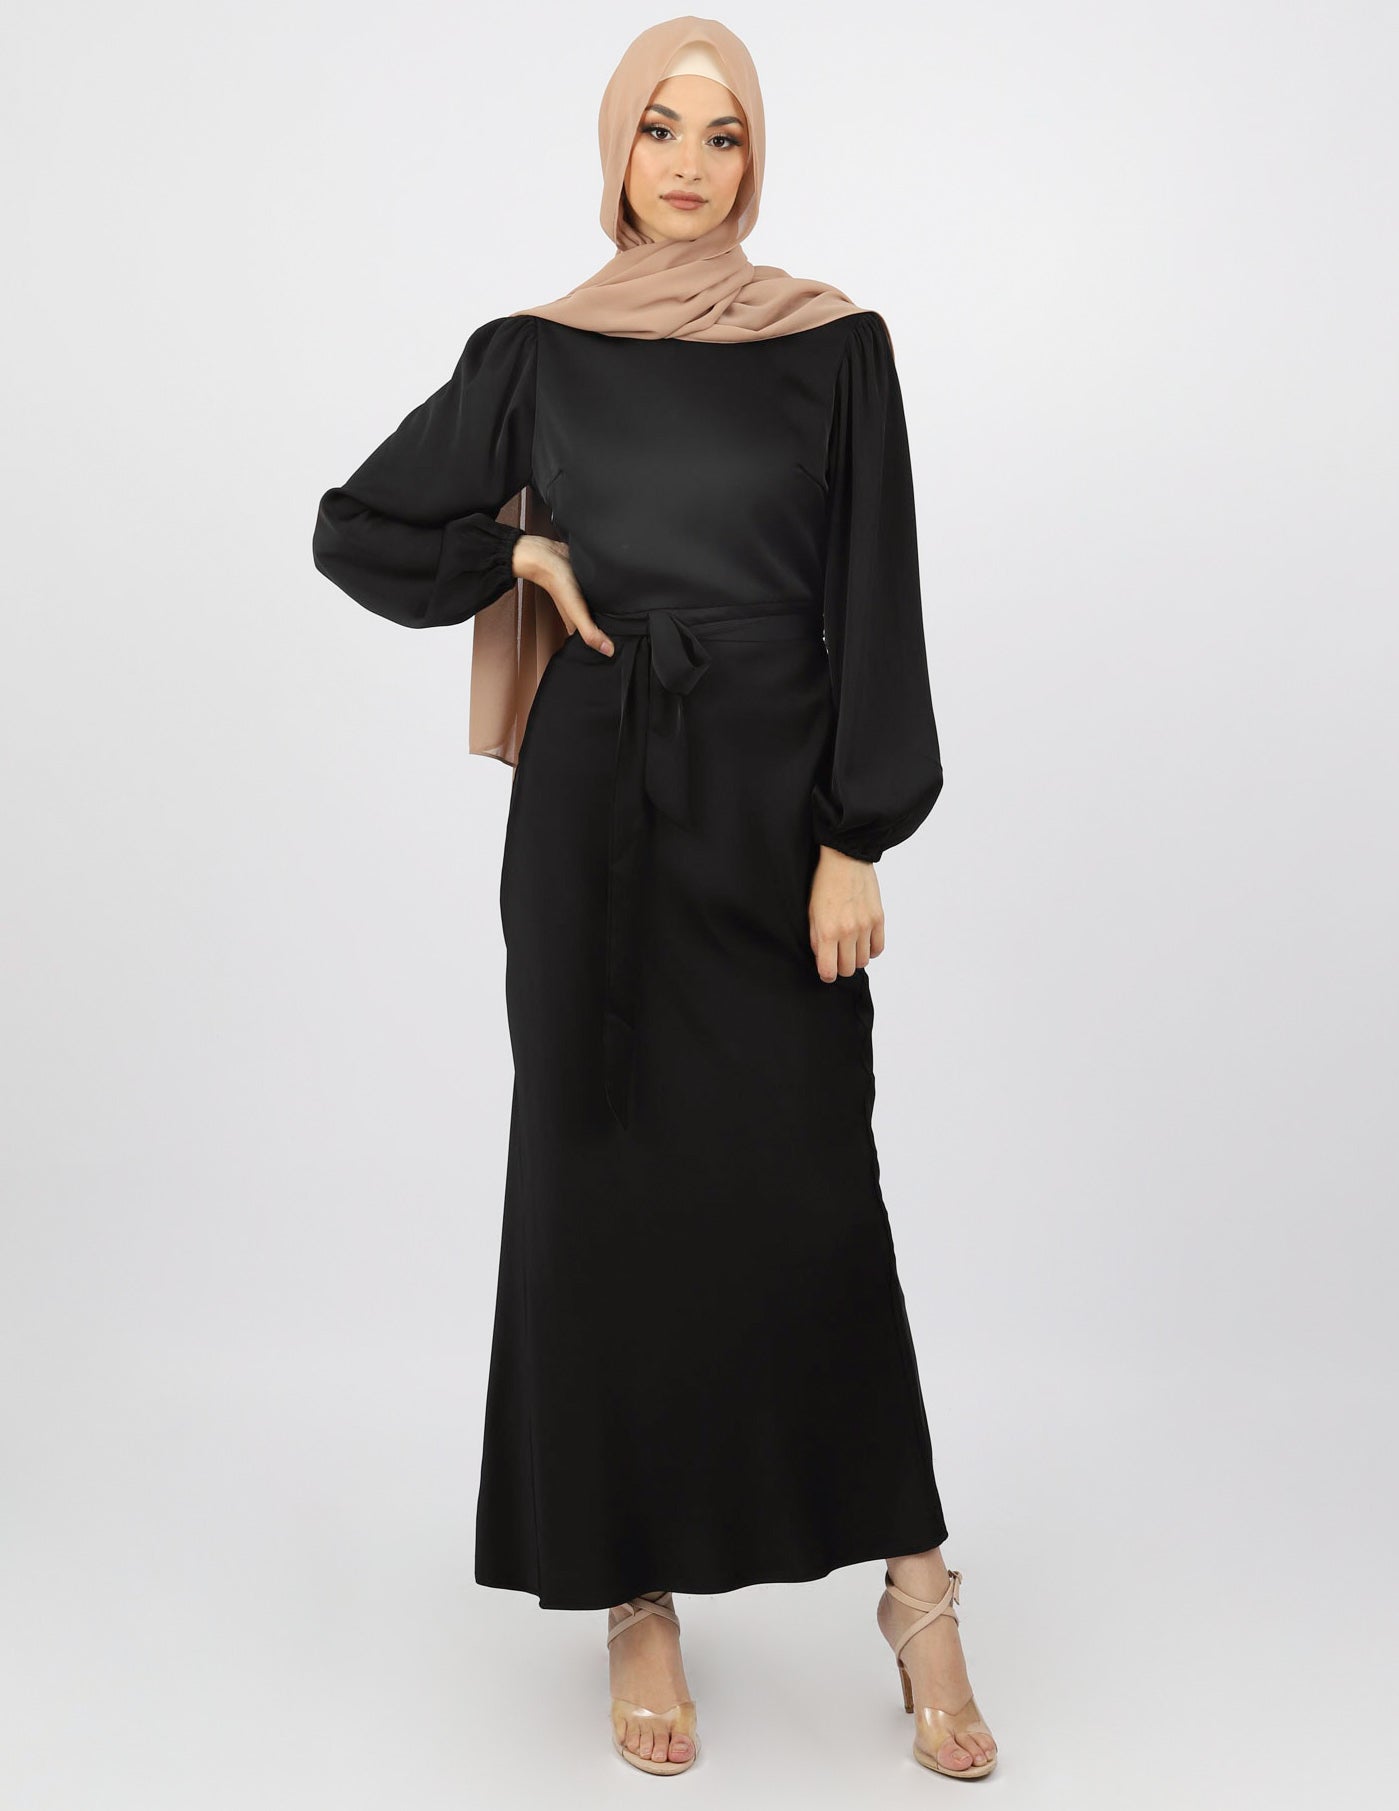 M7754Black-dress-abaya